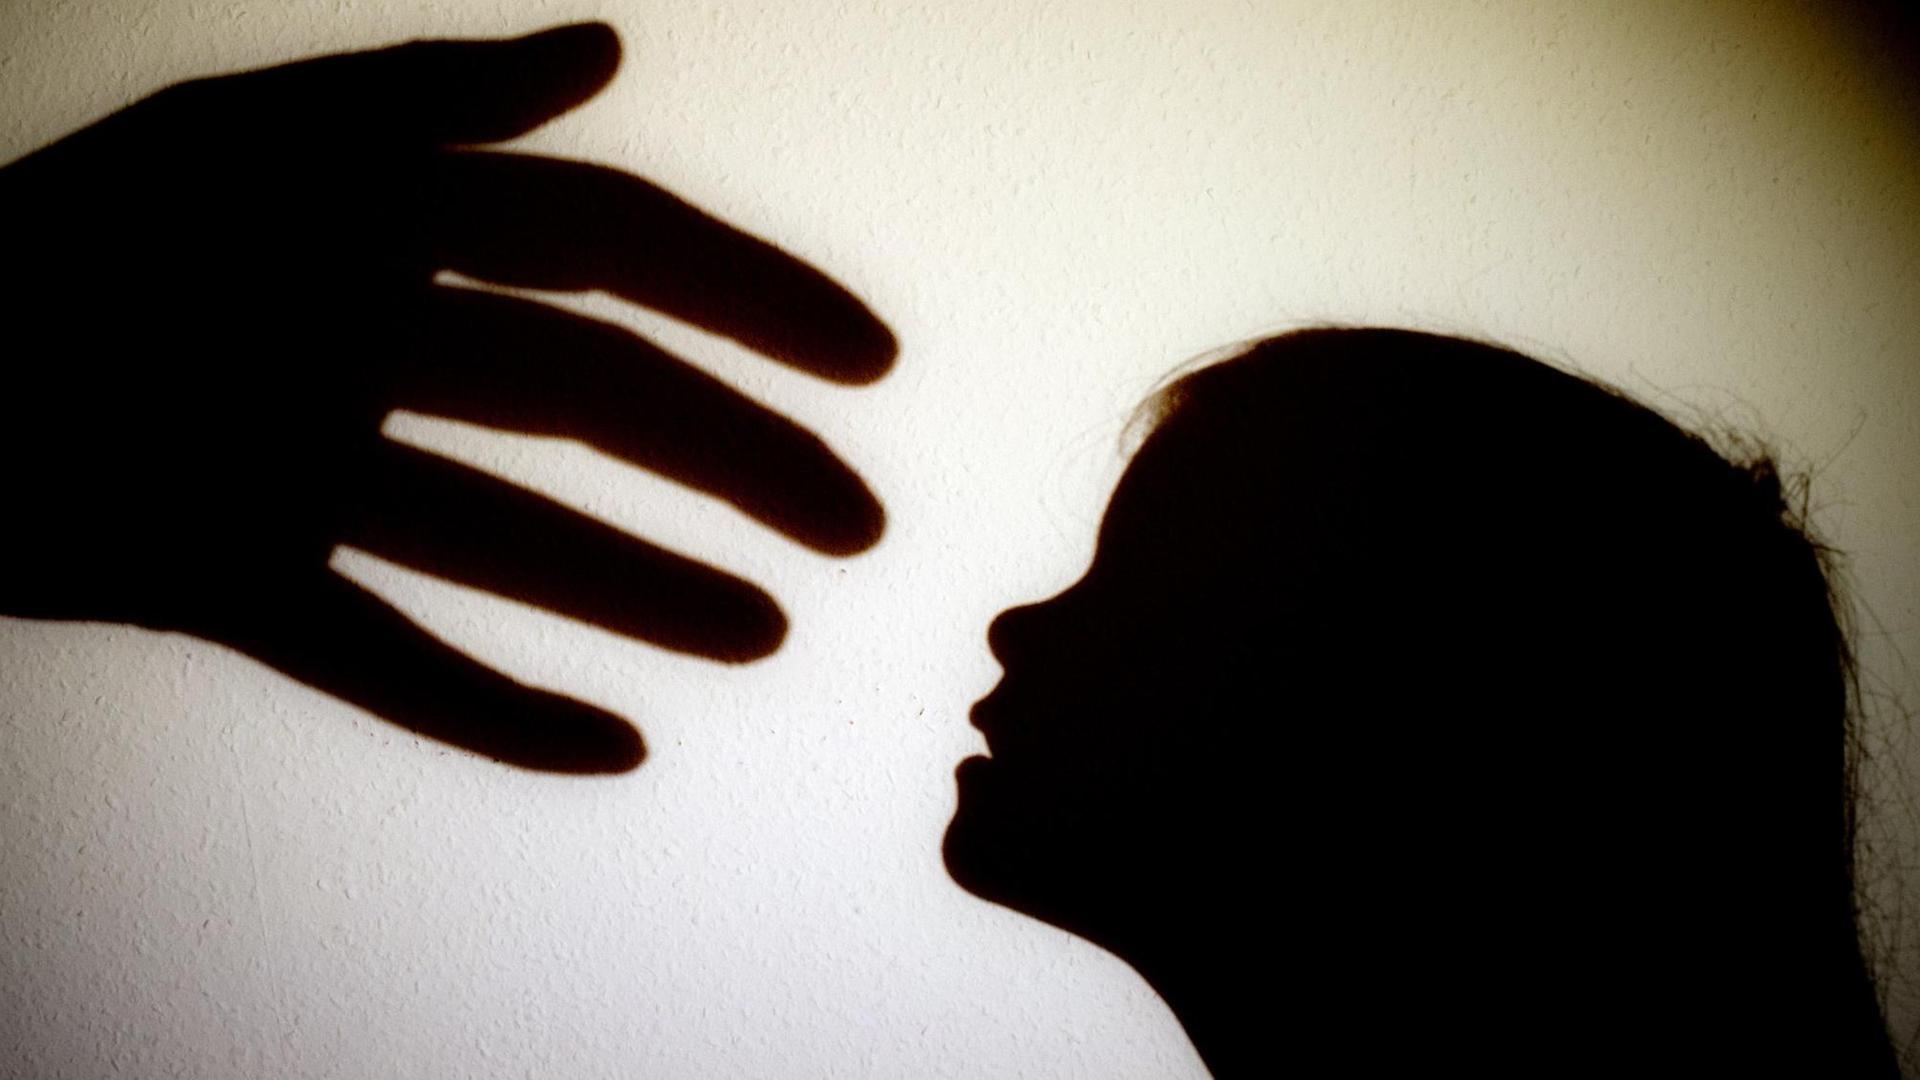 Schatten einer Hand einer erwachsenen Person und der Kopf eines Kindes an einer Wand eines Zimmers.